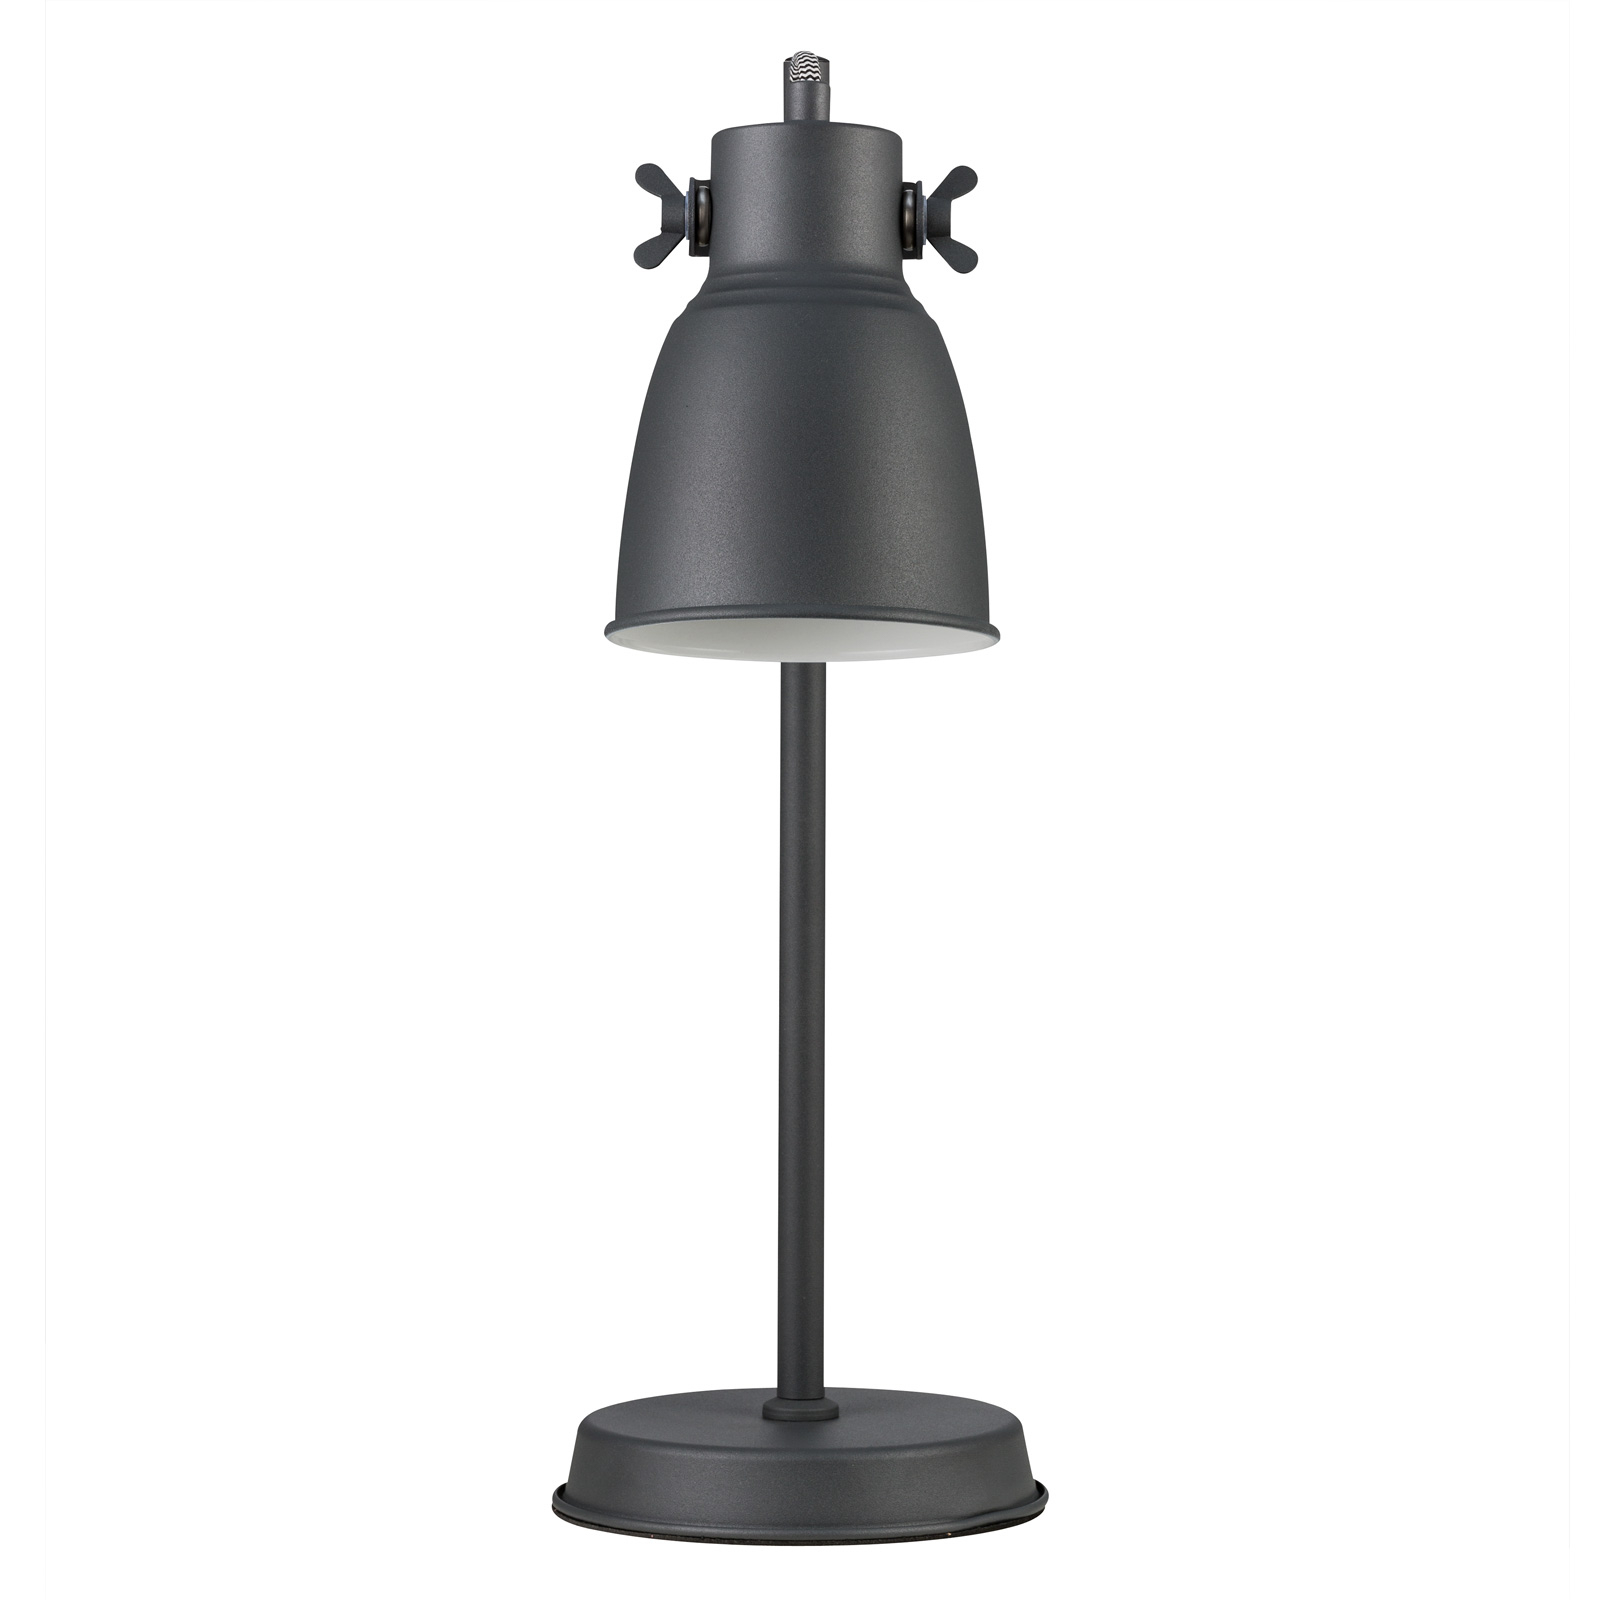 Tafellamp Adrian van metaal, zwart